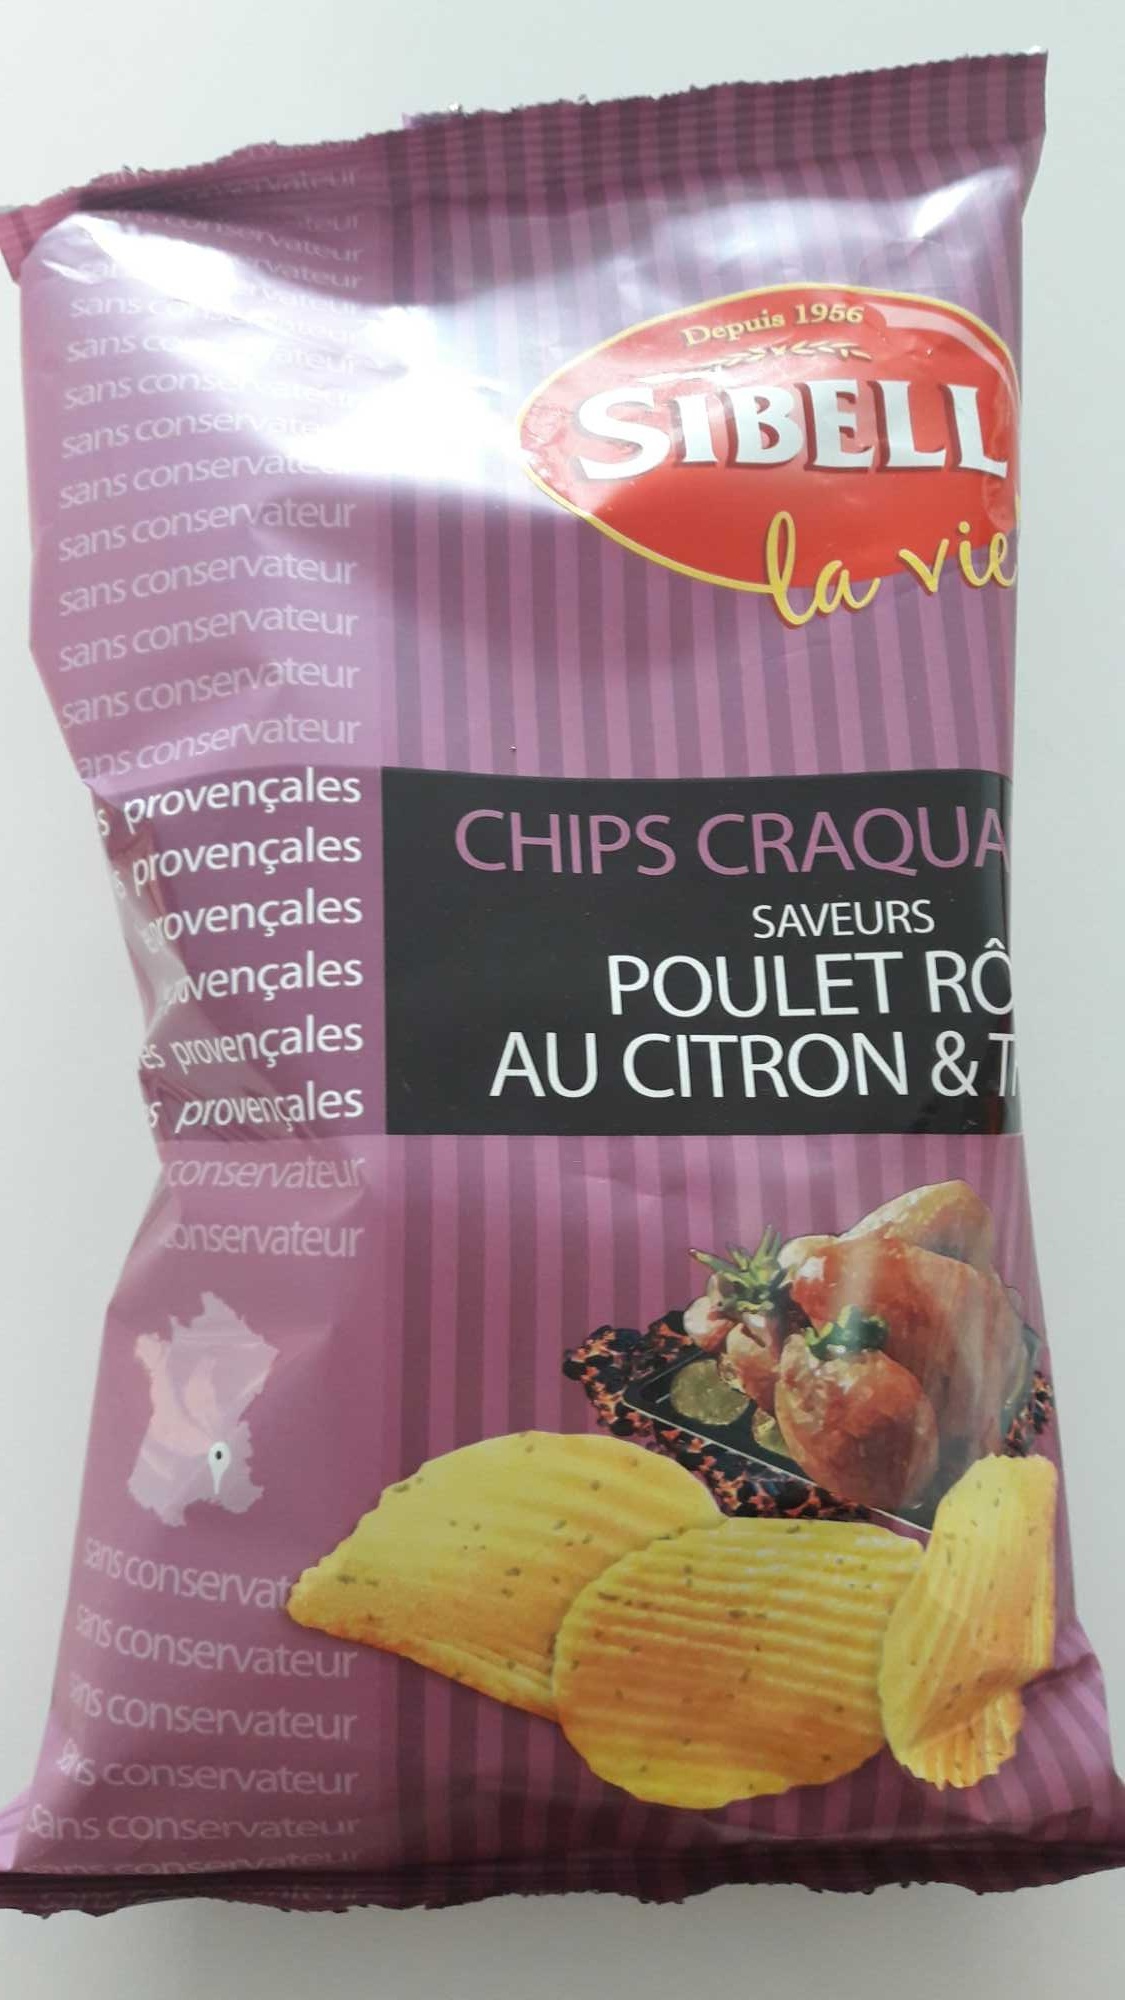 Chips craquantes poulet rôti au citron et thym - Product - fr